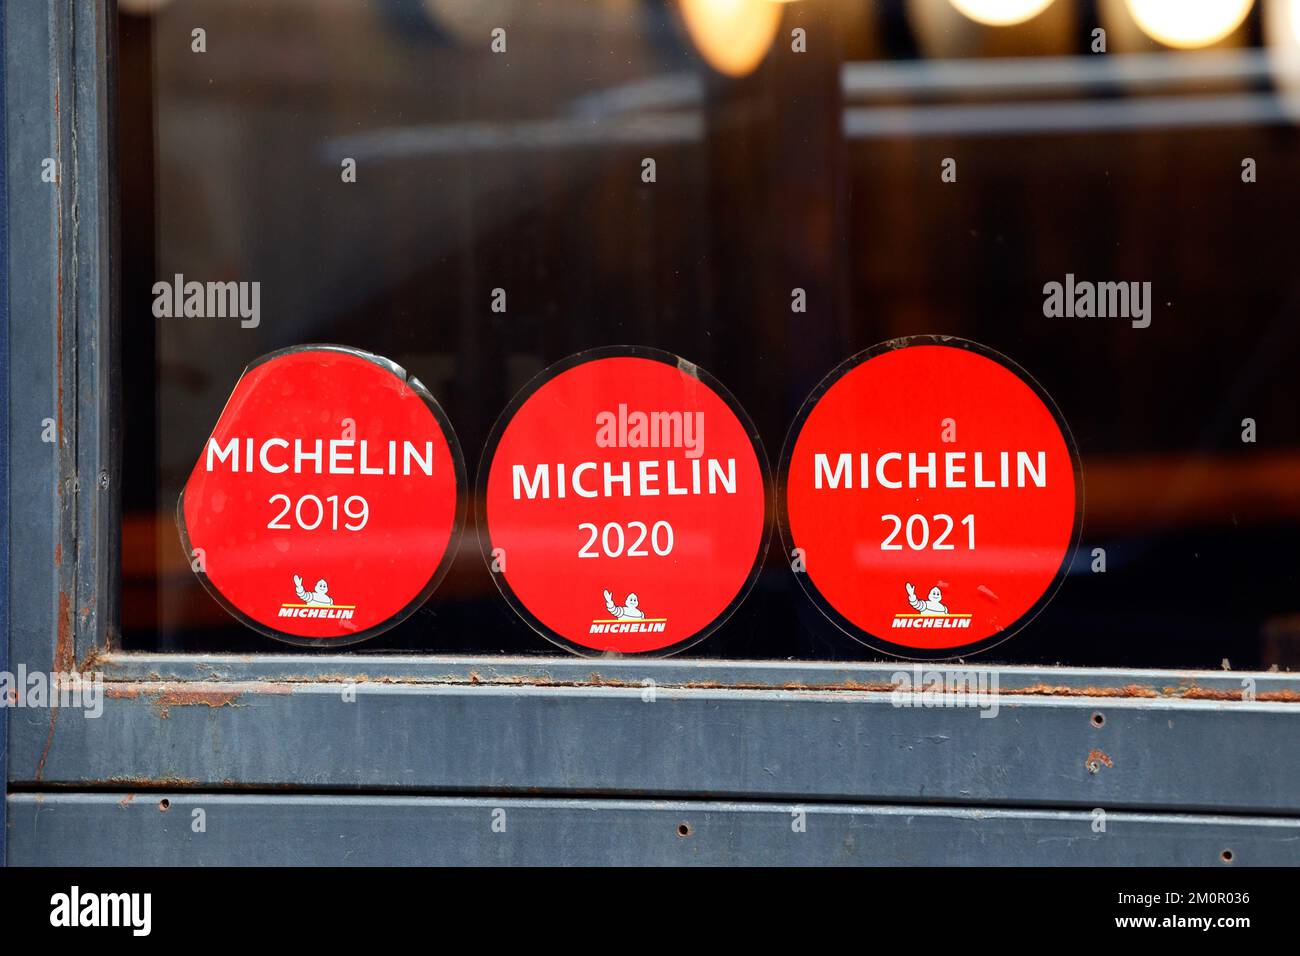 Michelin Guide Restaurantbewertungsaufkleber auf dem Fenster eines Restaurants Stockfoto